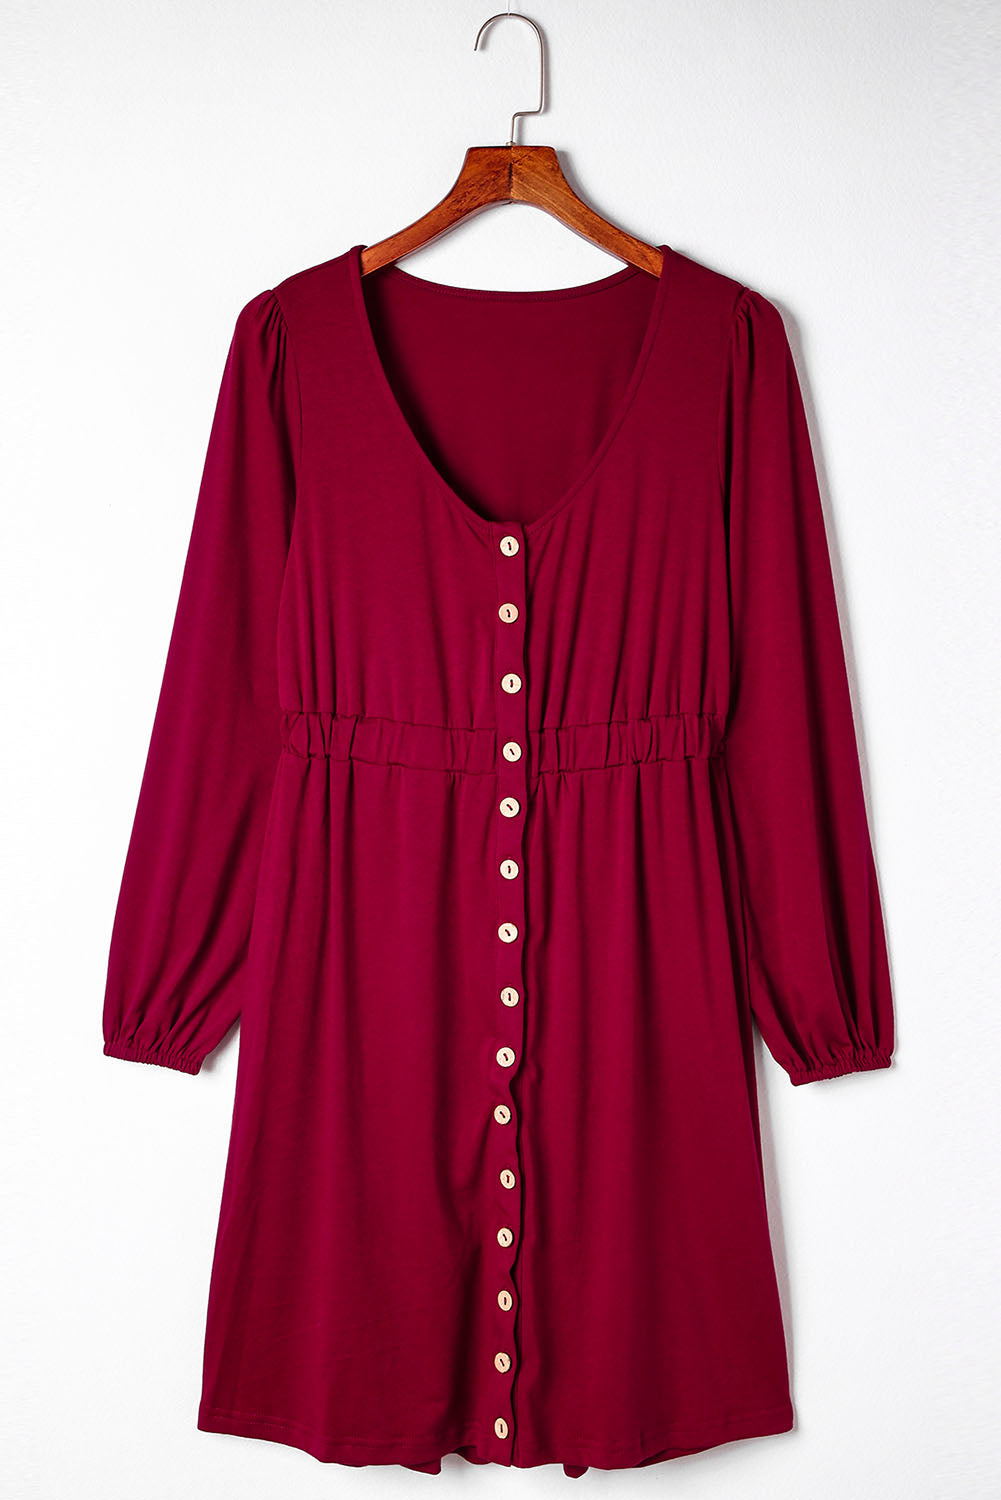 Feuriges, rotes, langärmliges Kleid mit Knöpfen und hoher Taille